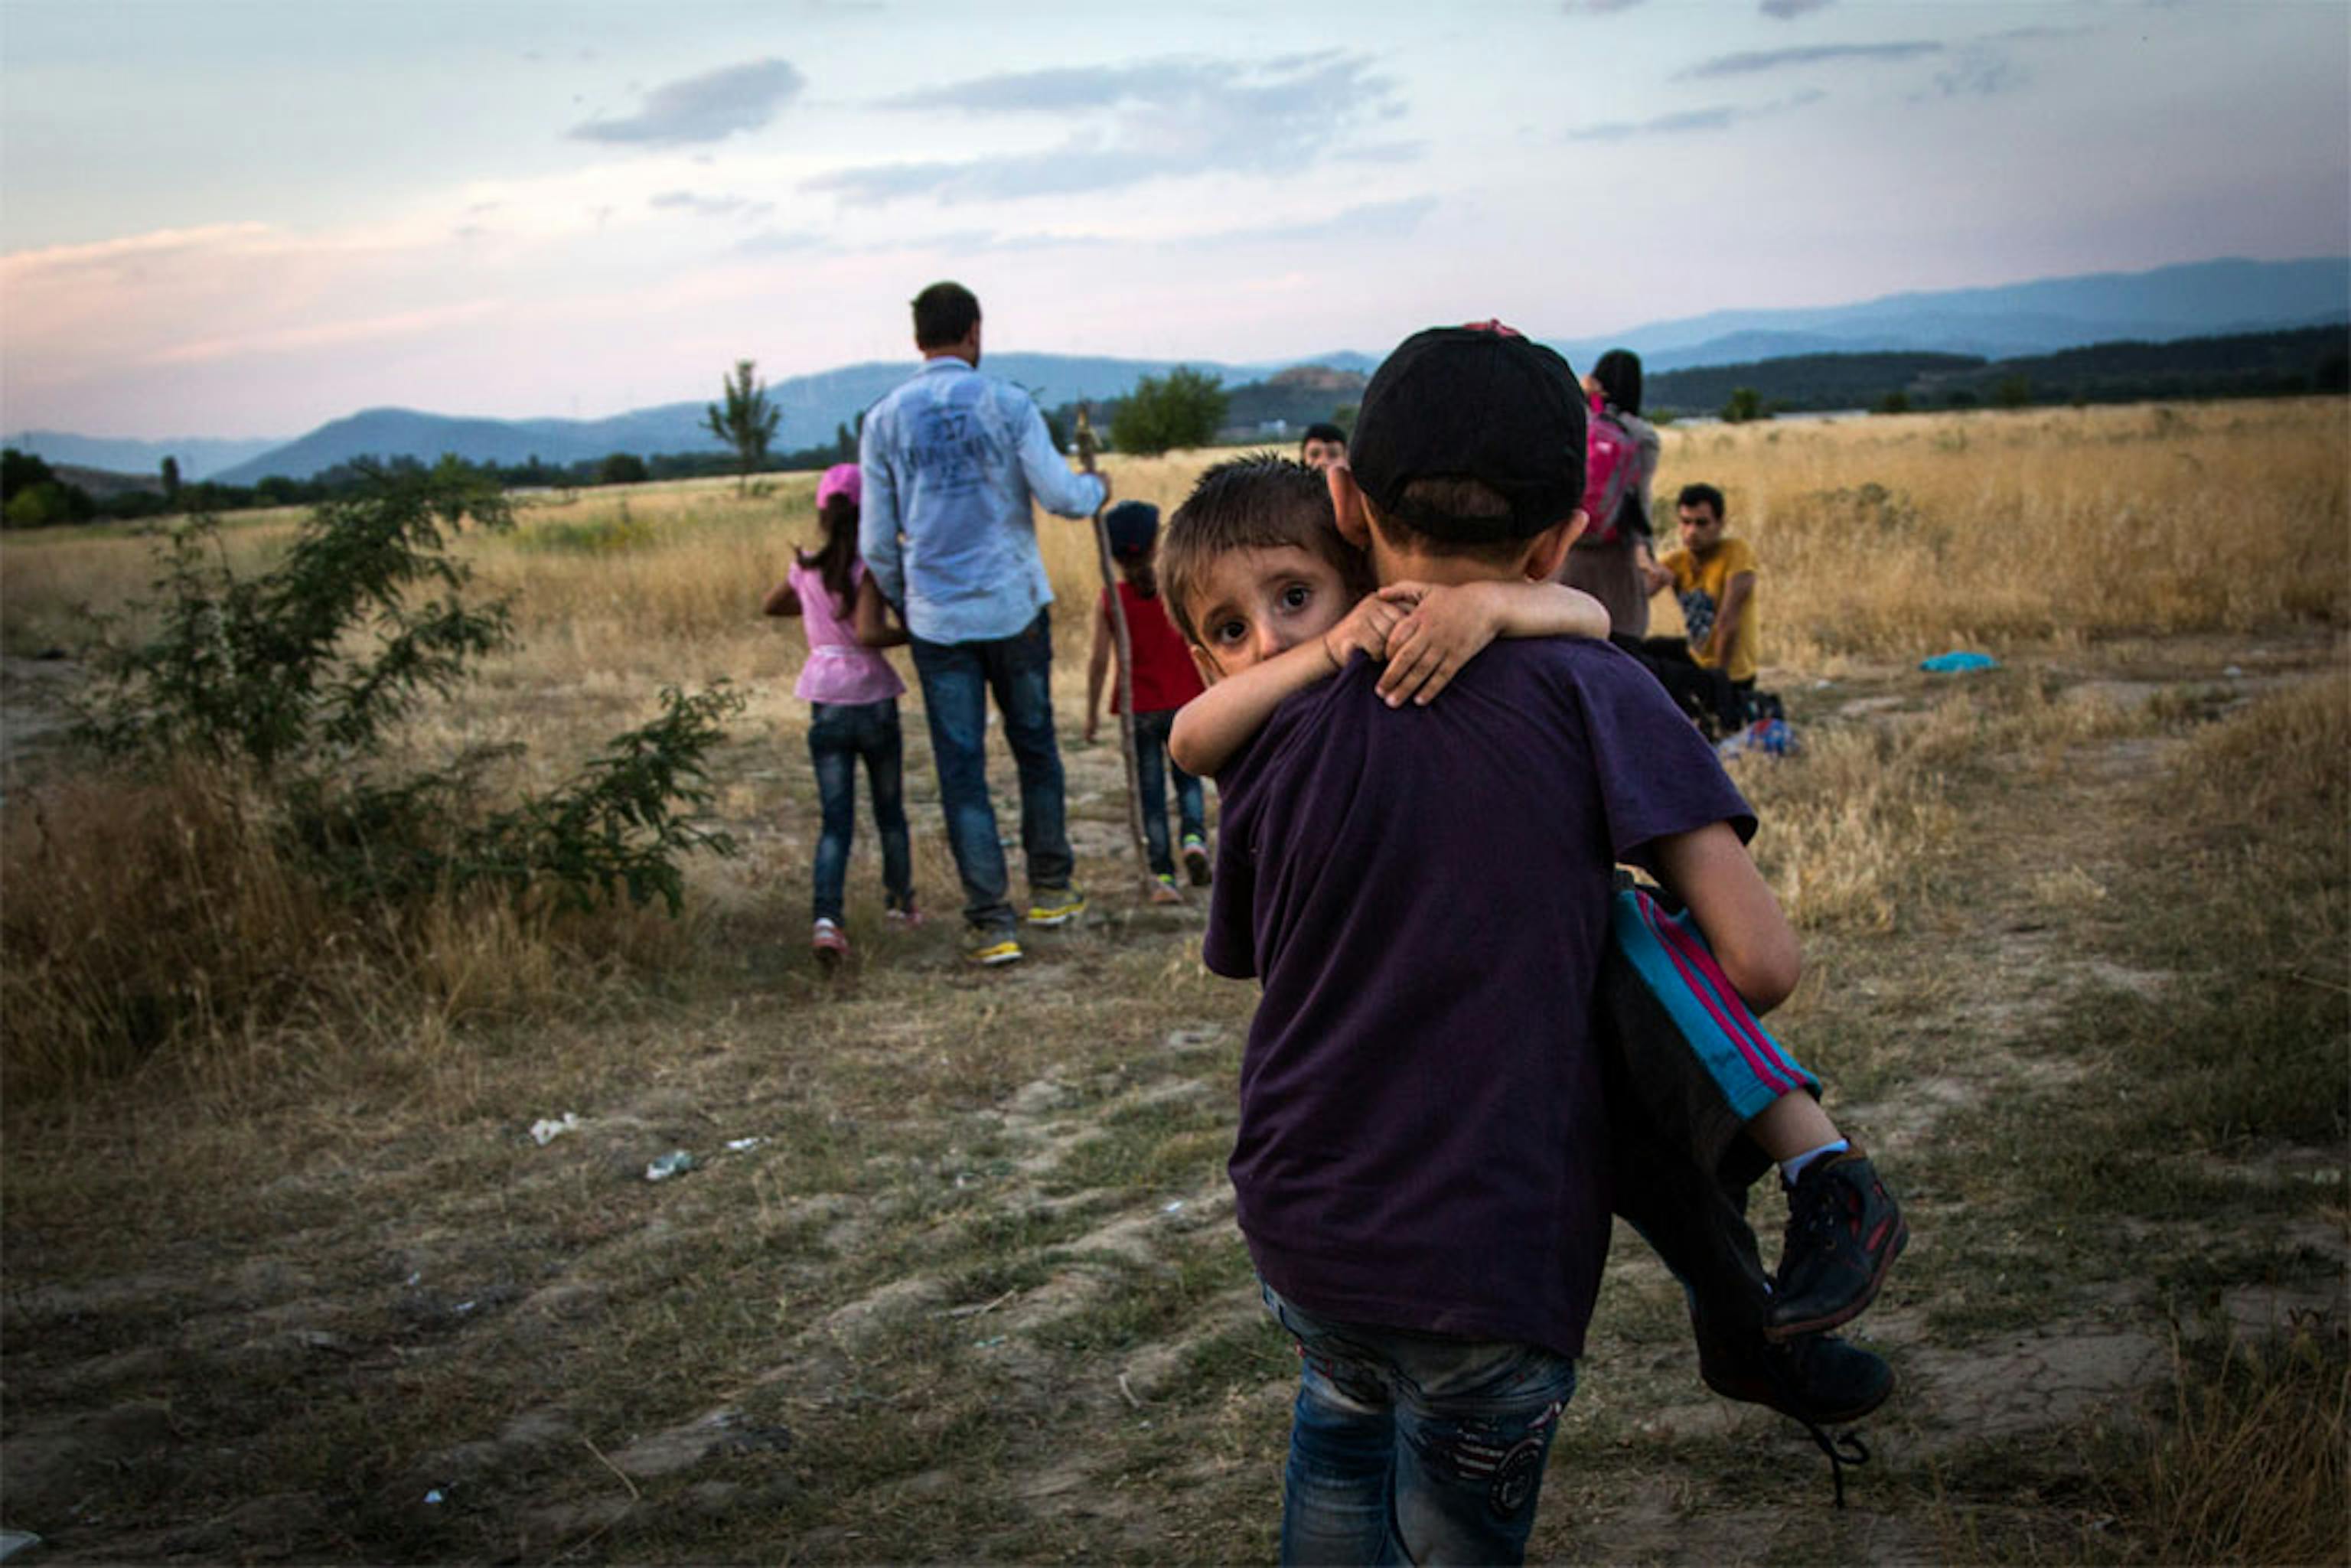 Profughi siriani alla frontiera tra Macedonia e Grecia - ©UNHCR/2015/A. McConnell